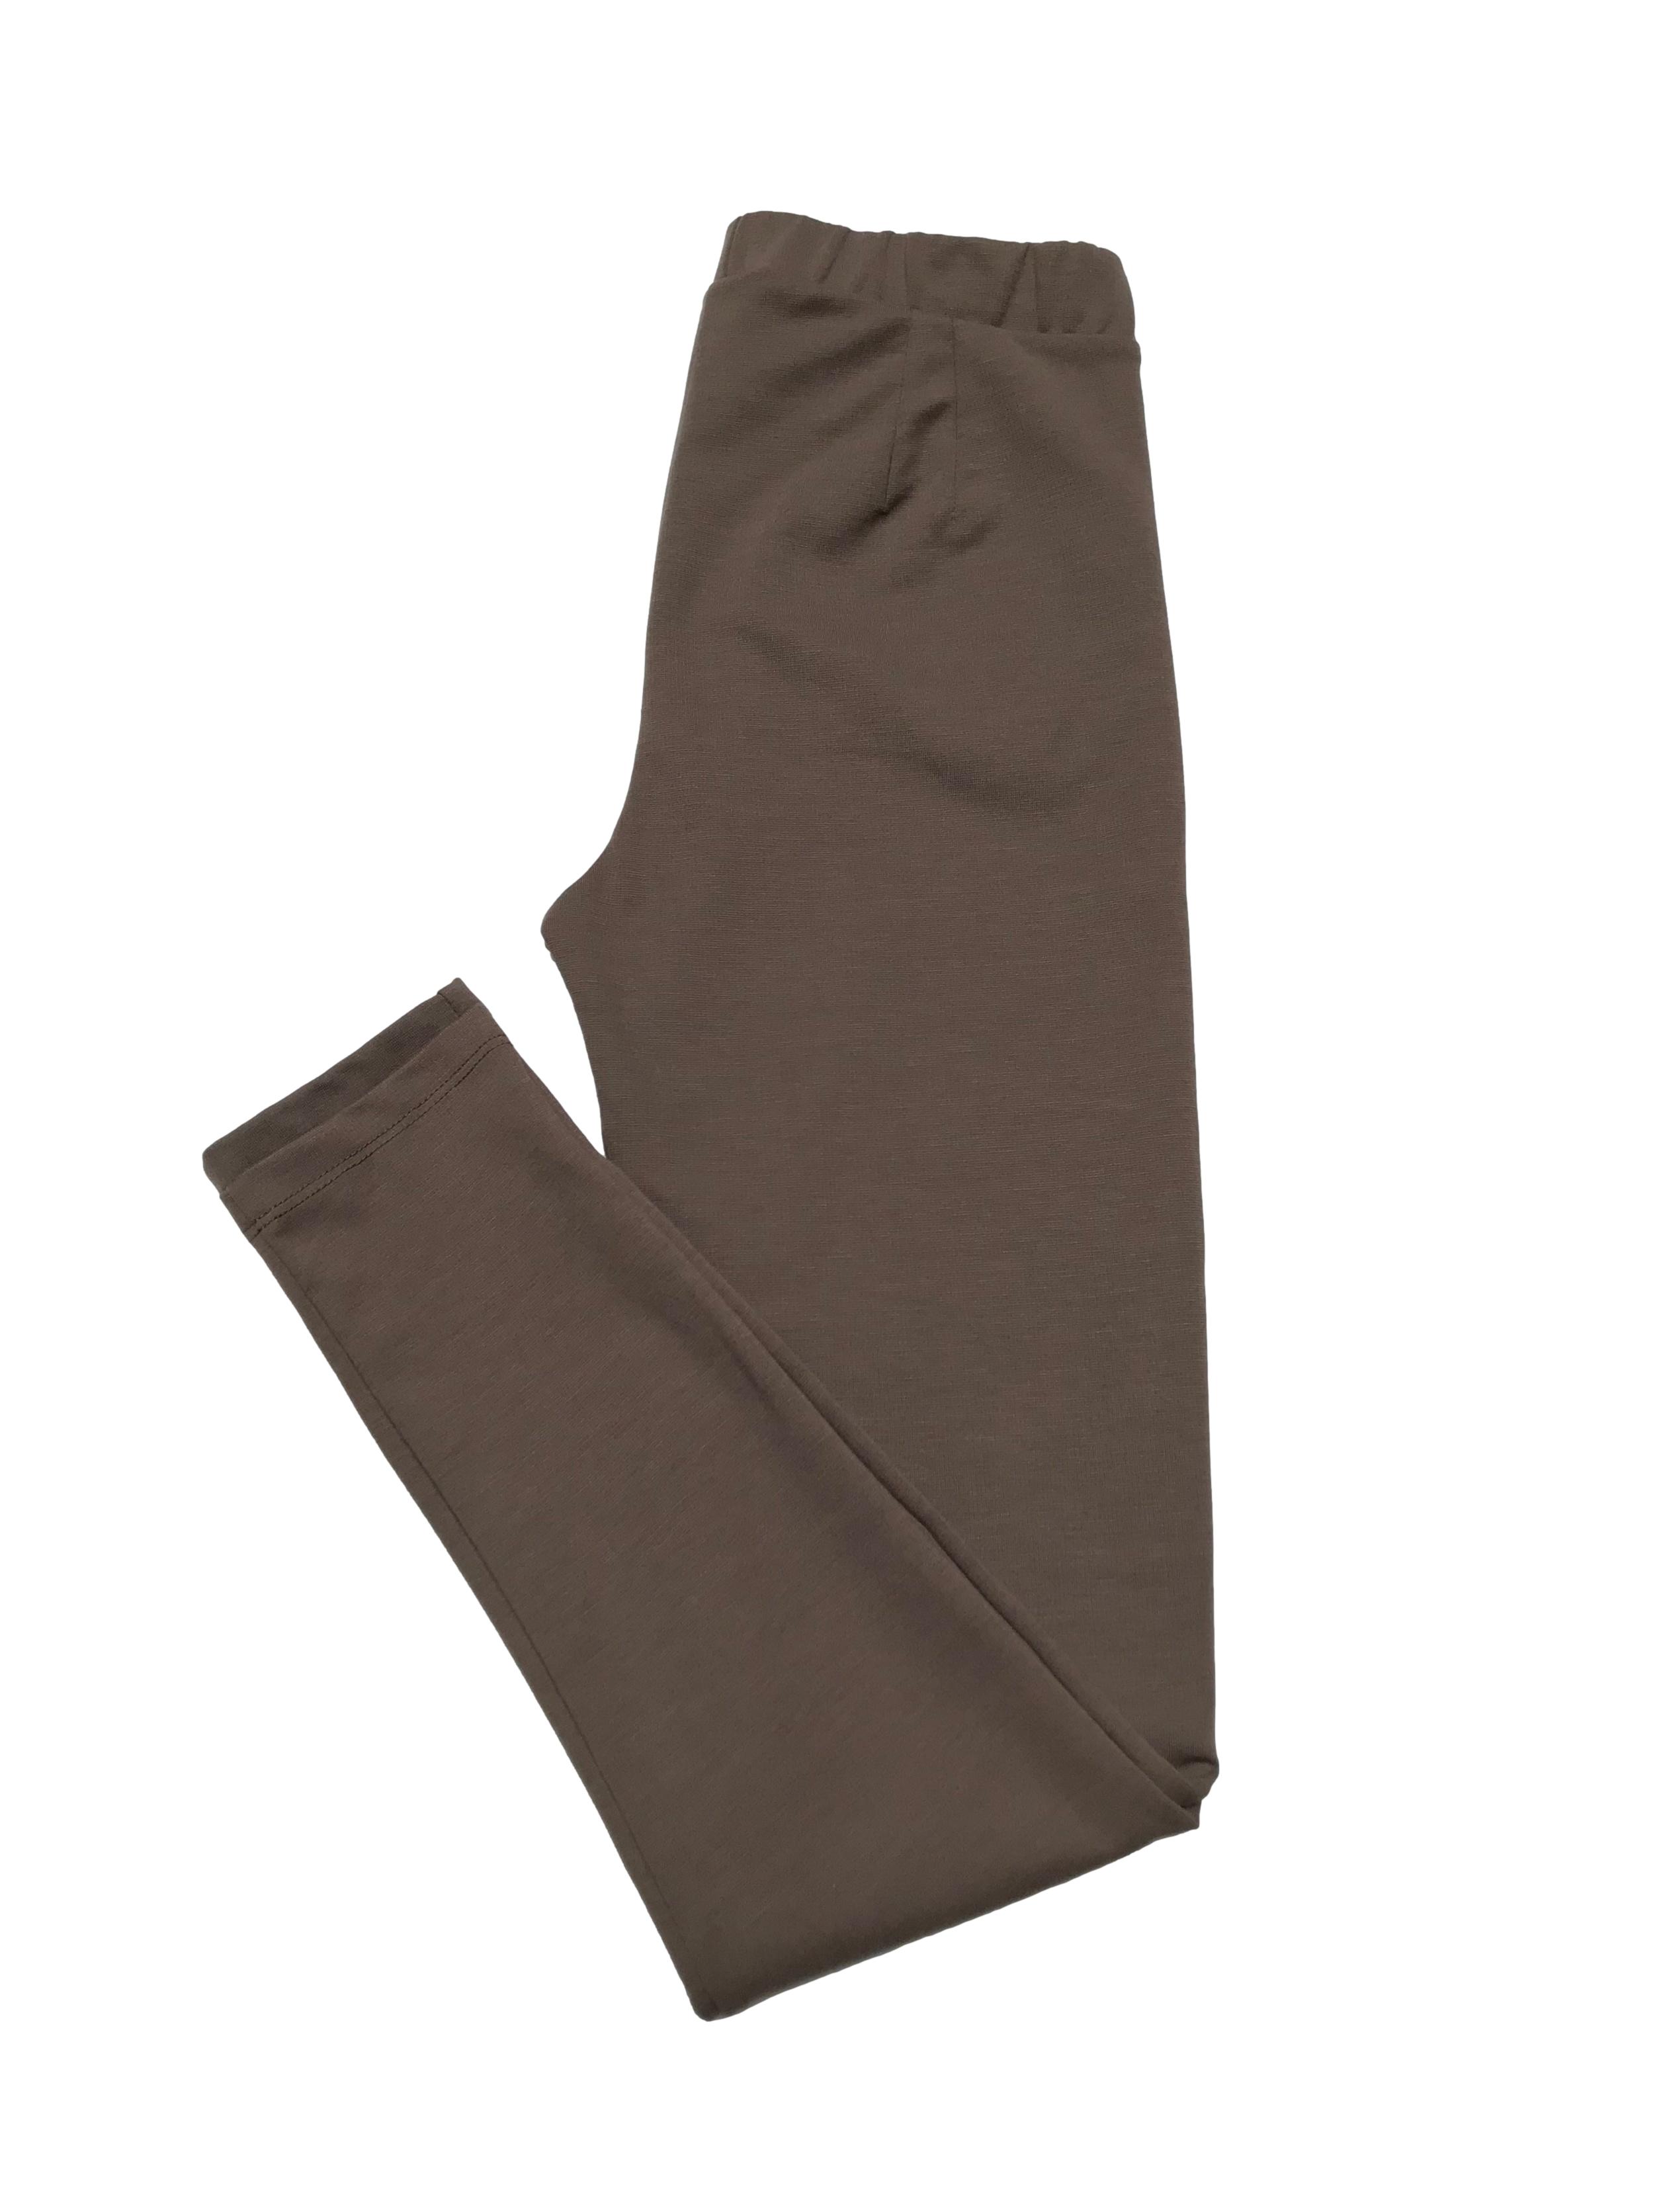 Legging de tela tipo algodón stretch grueso, con cierre a los lados. Cintura 68cm sin estirar Largo 95cm